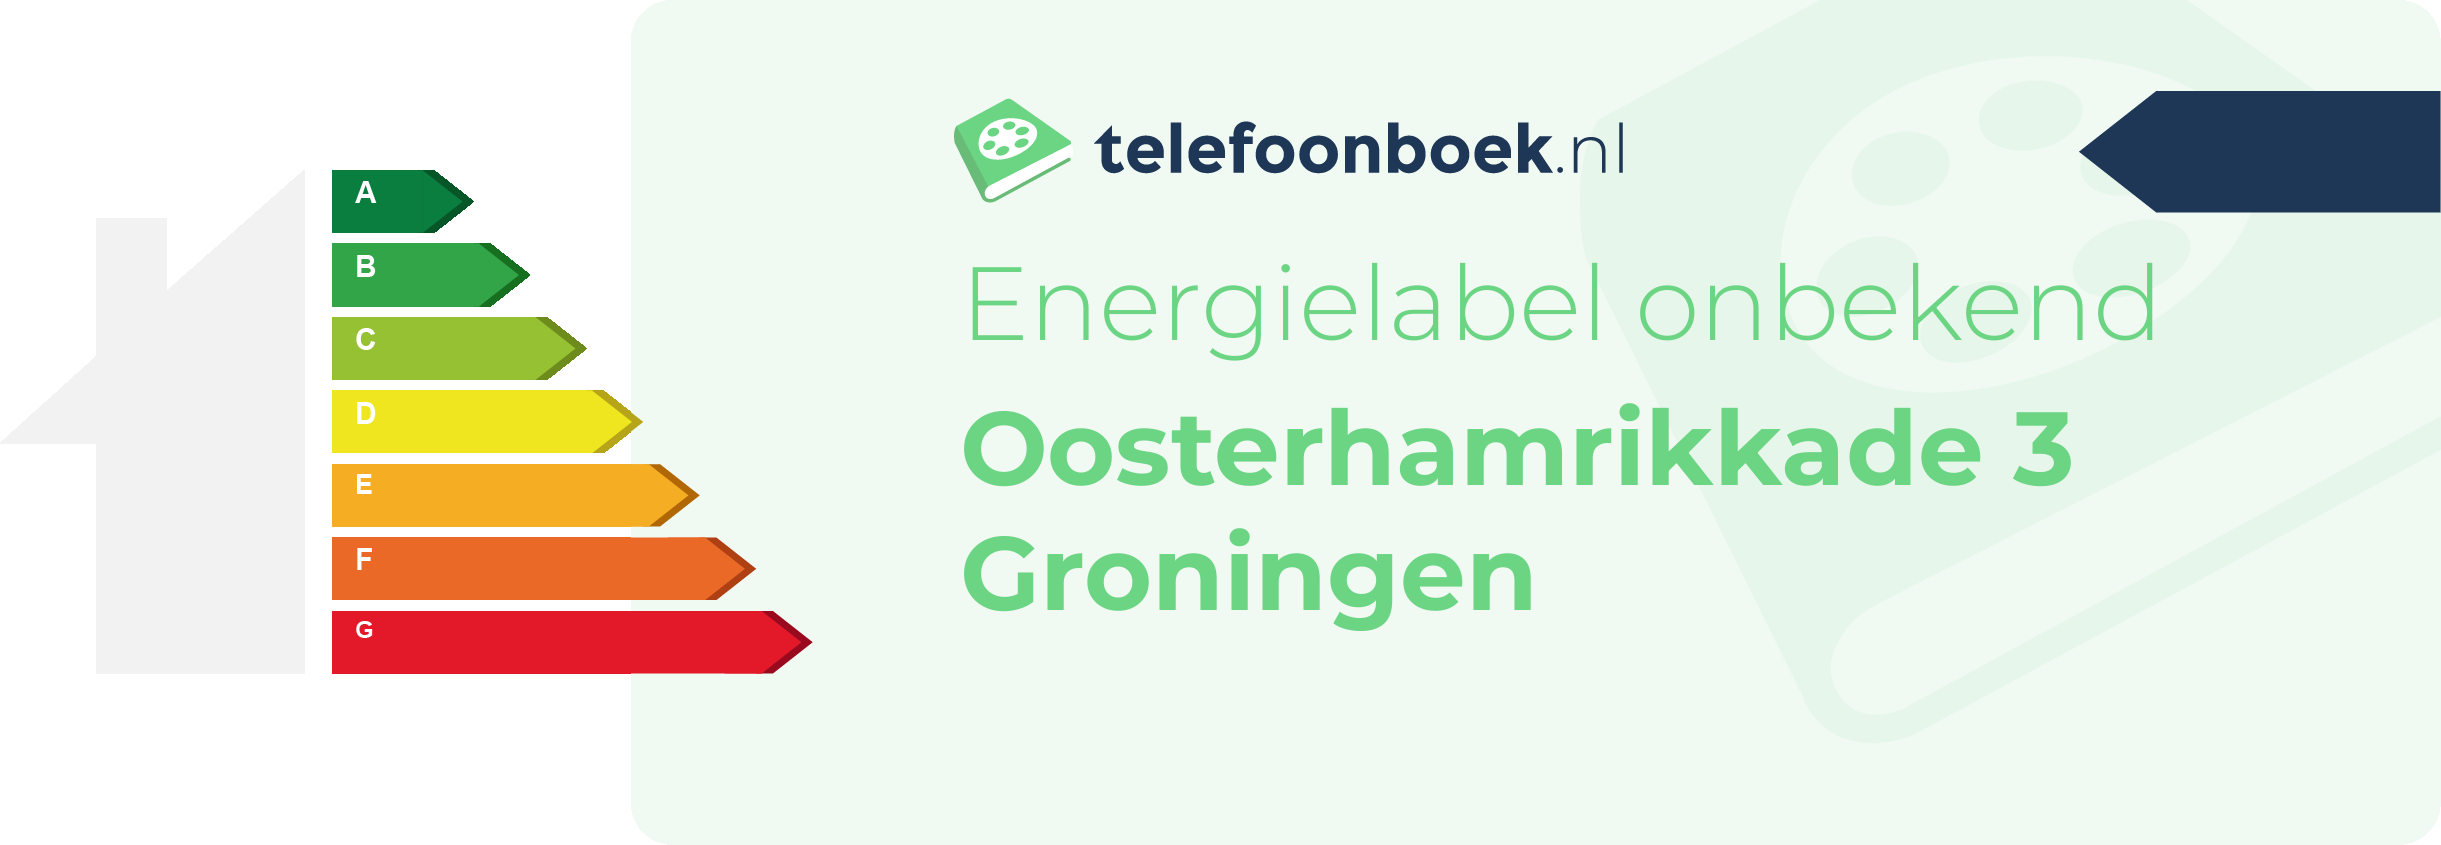 Energielabel Oosterhamrikkade 3 Groningen